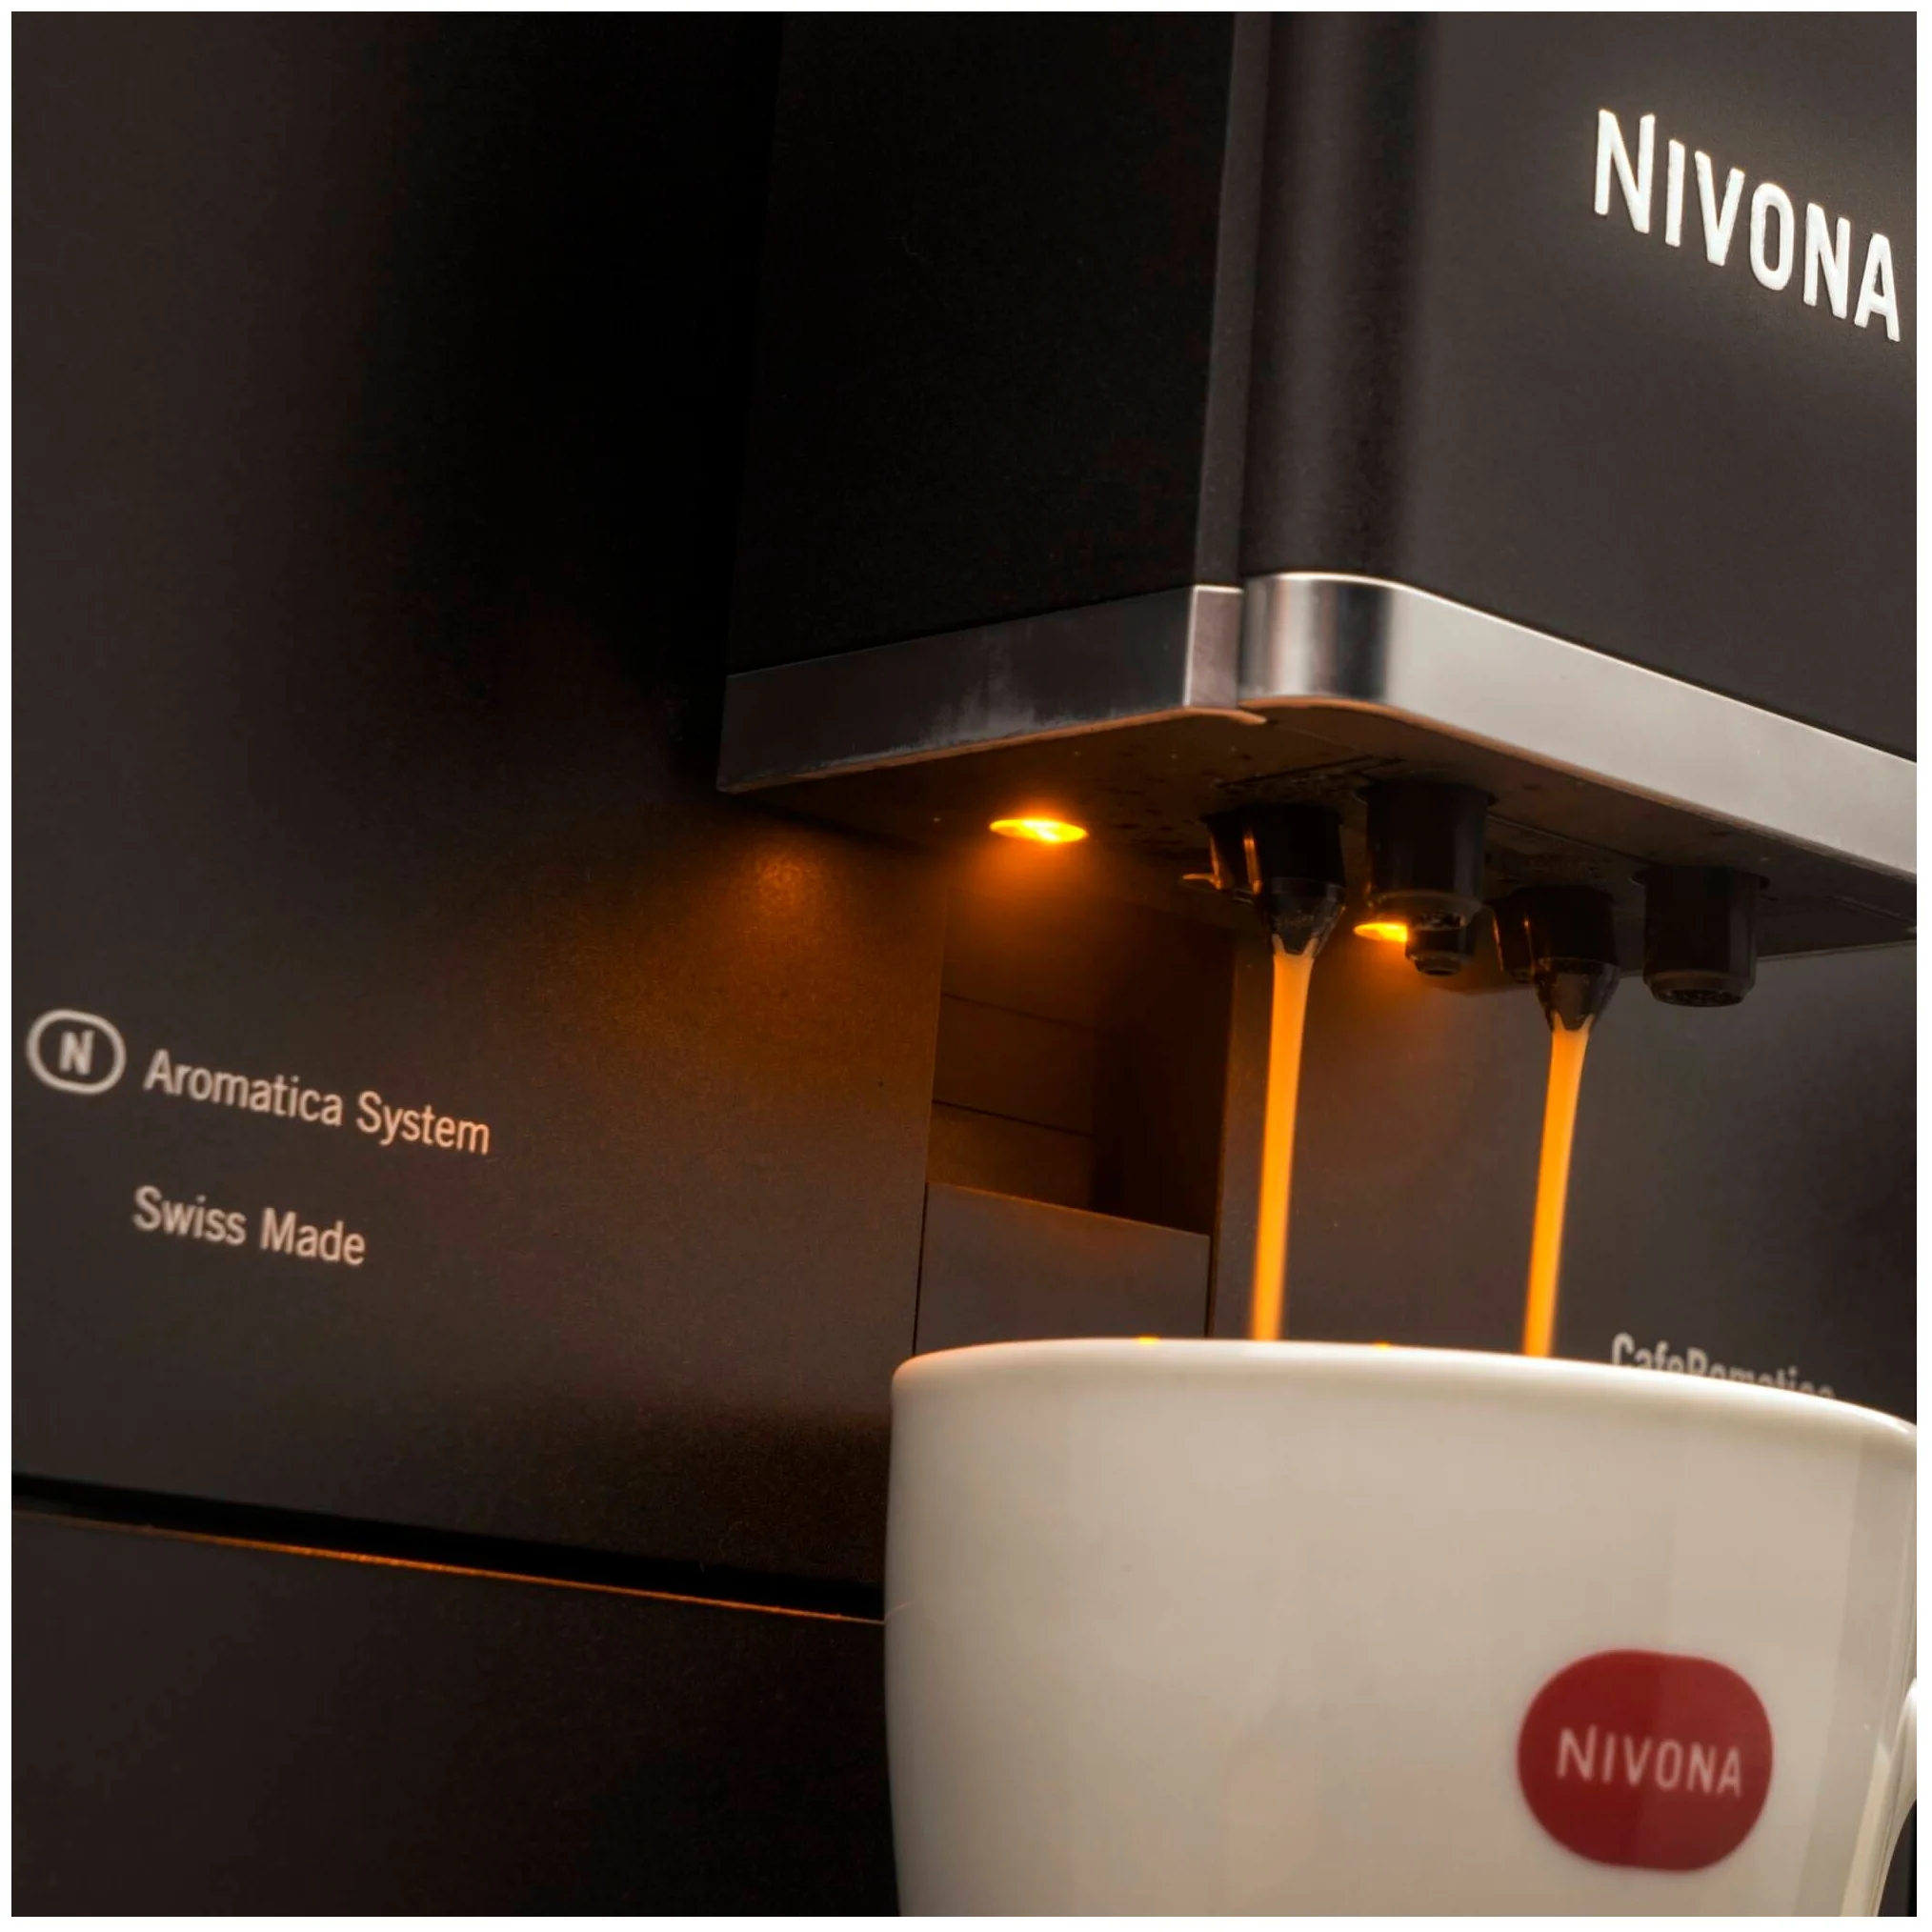 Nivona CafeRomatica 960 - особенности конструкции: подсветка дисплея, подсветка, отсек для шнура, съемный лоток для сбора капель, индикатор уровня воды, индикатор включения, контейнер для отходов, дисплей